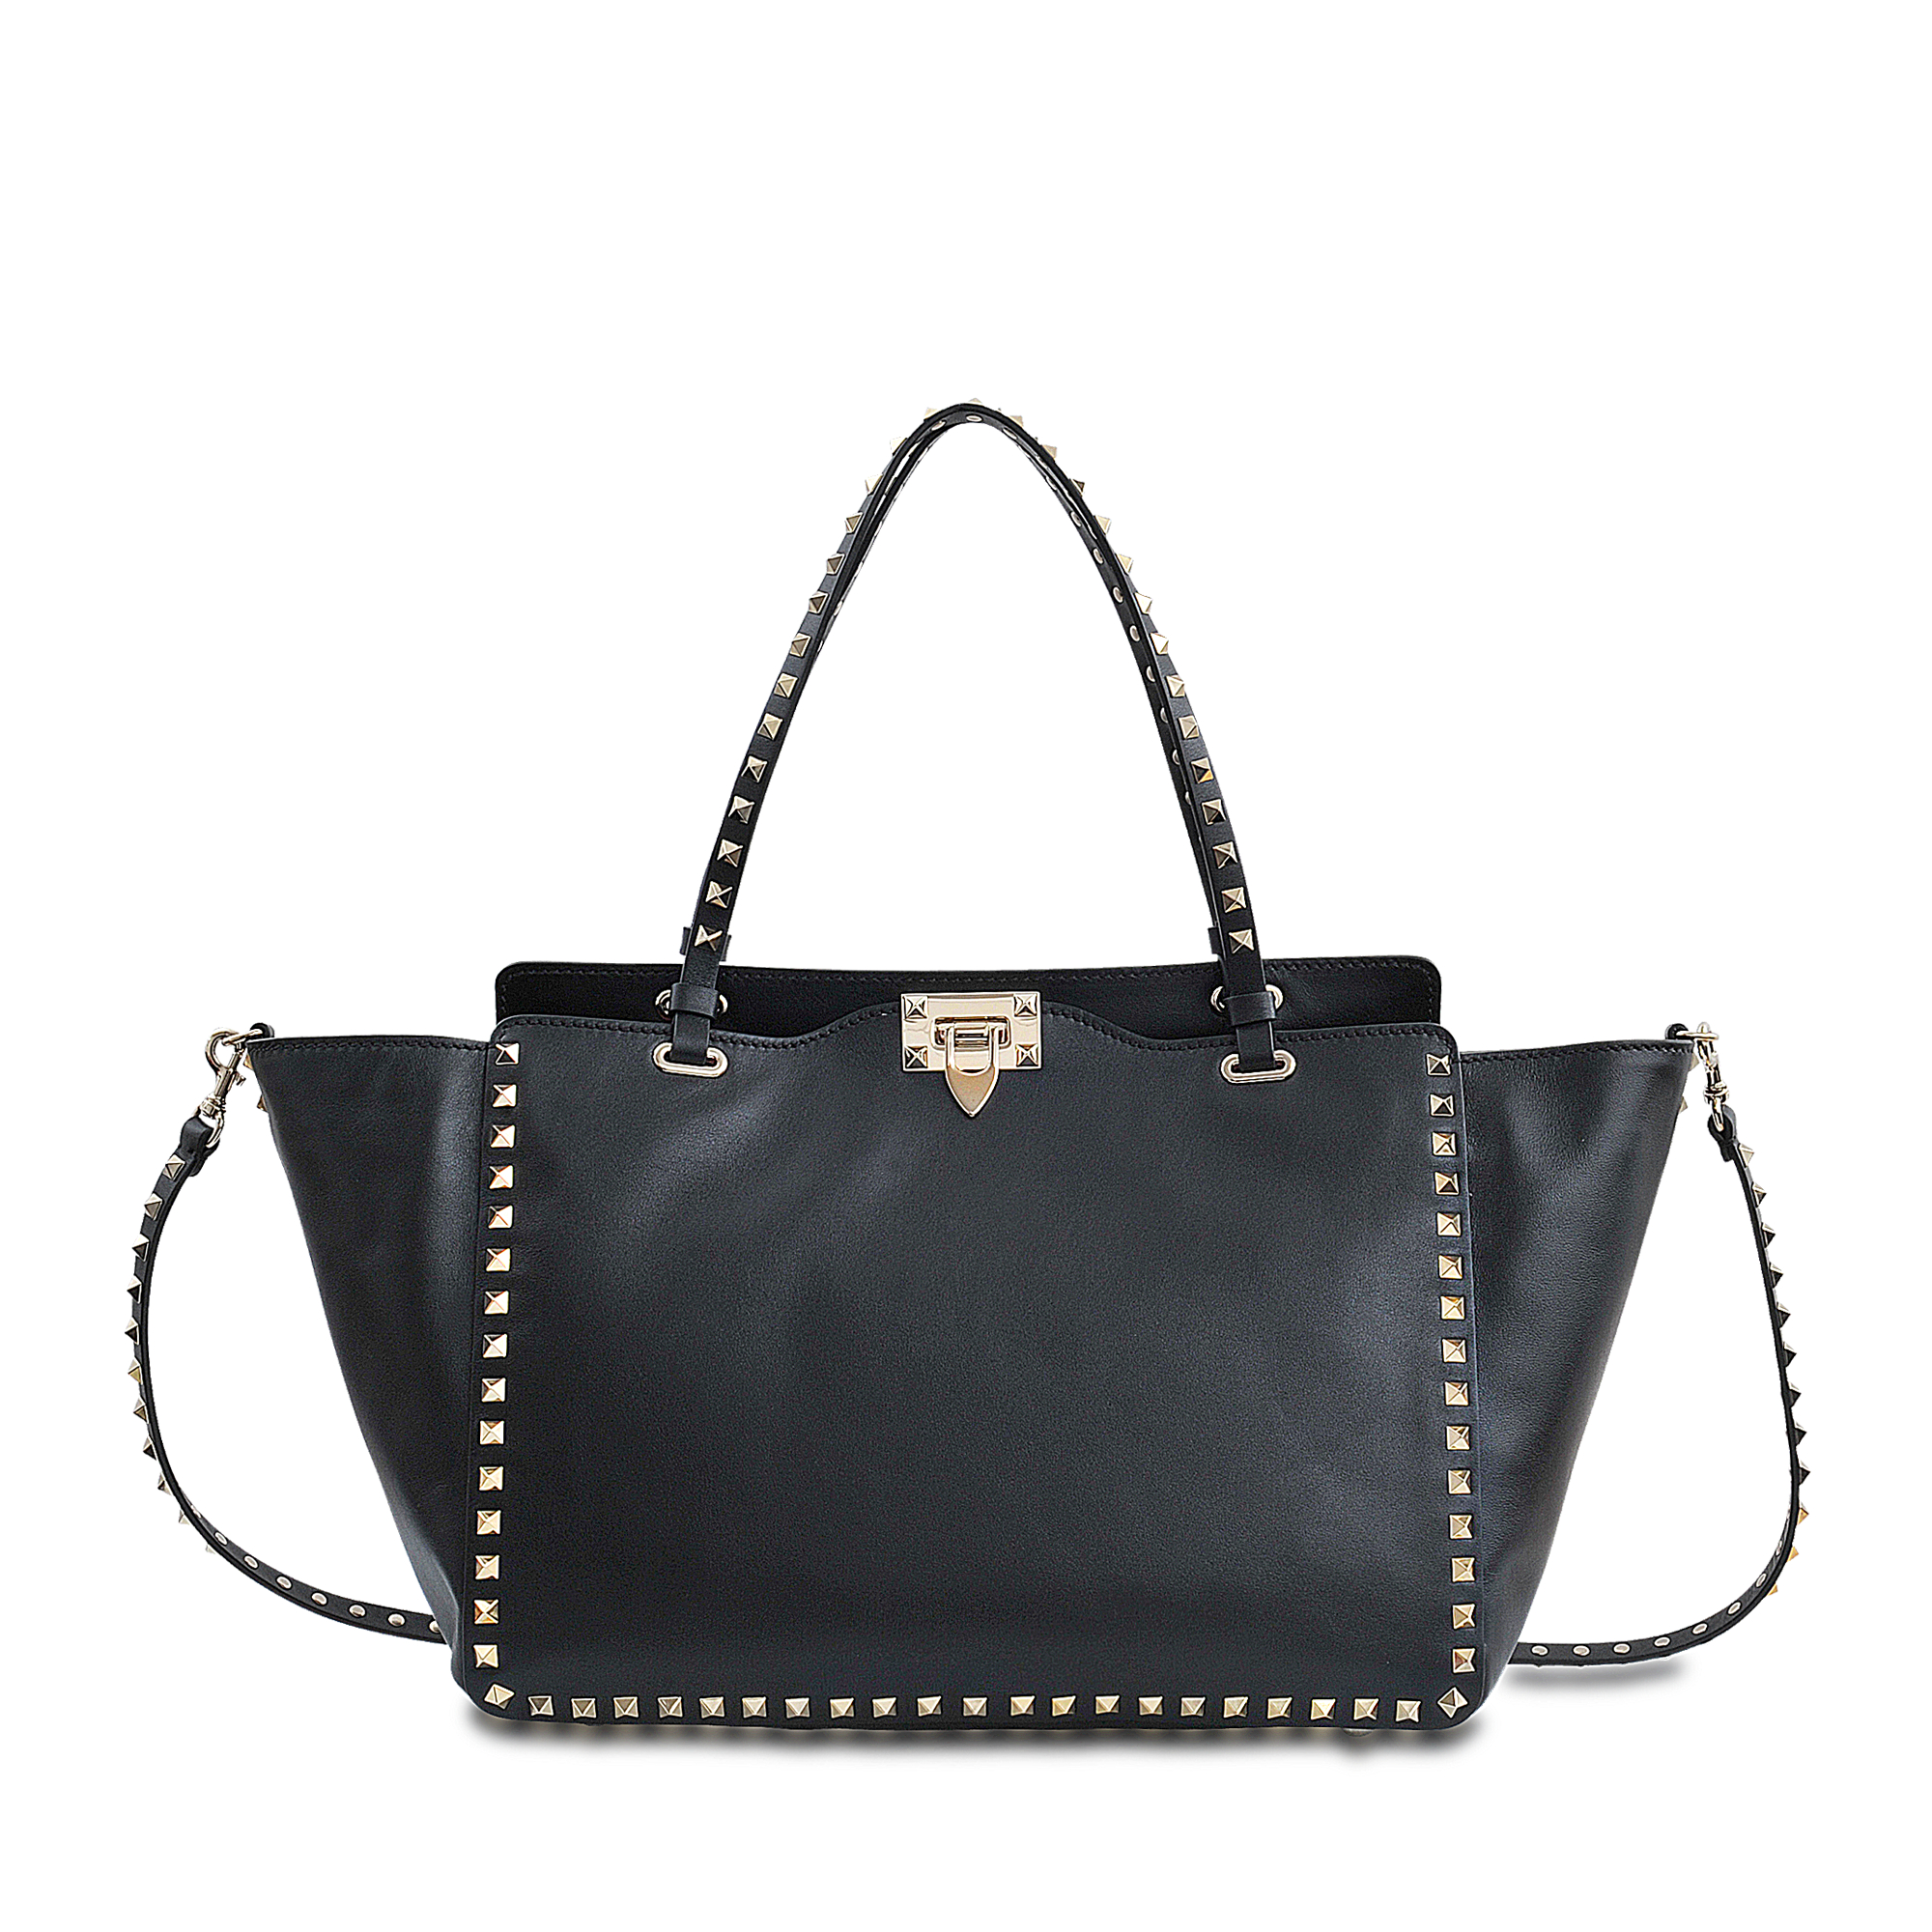 Lyst - Valentino Medium Rockstuds Bag in Black